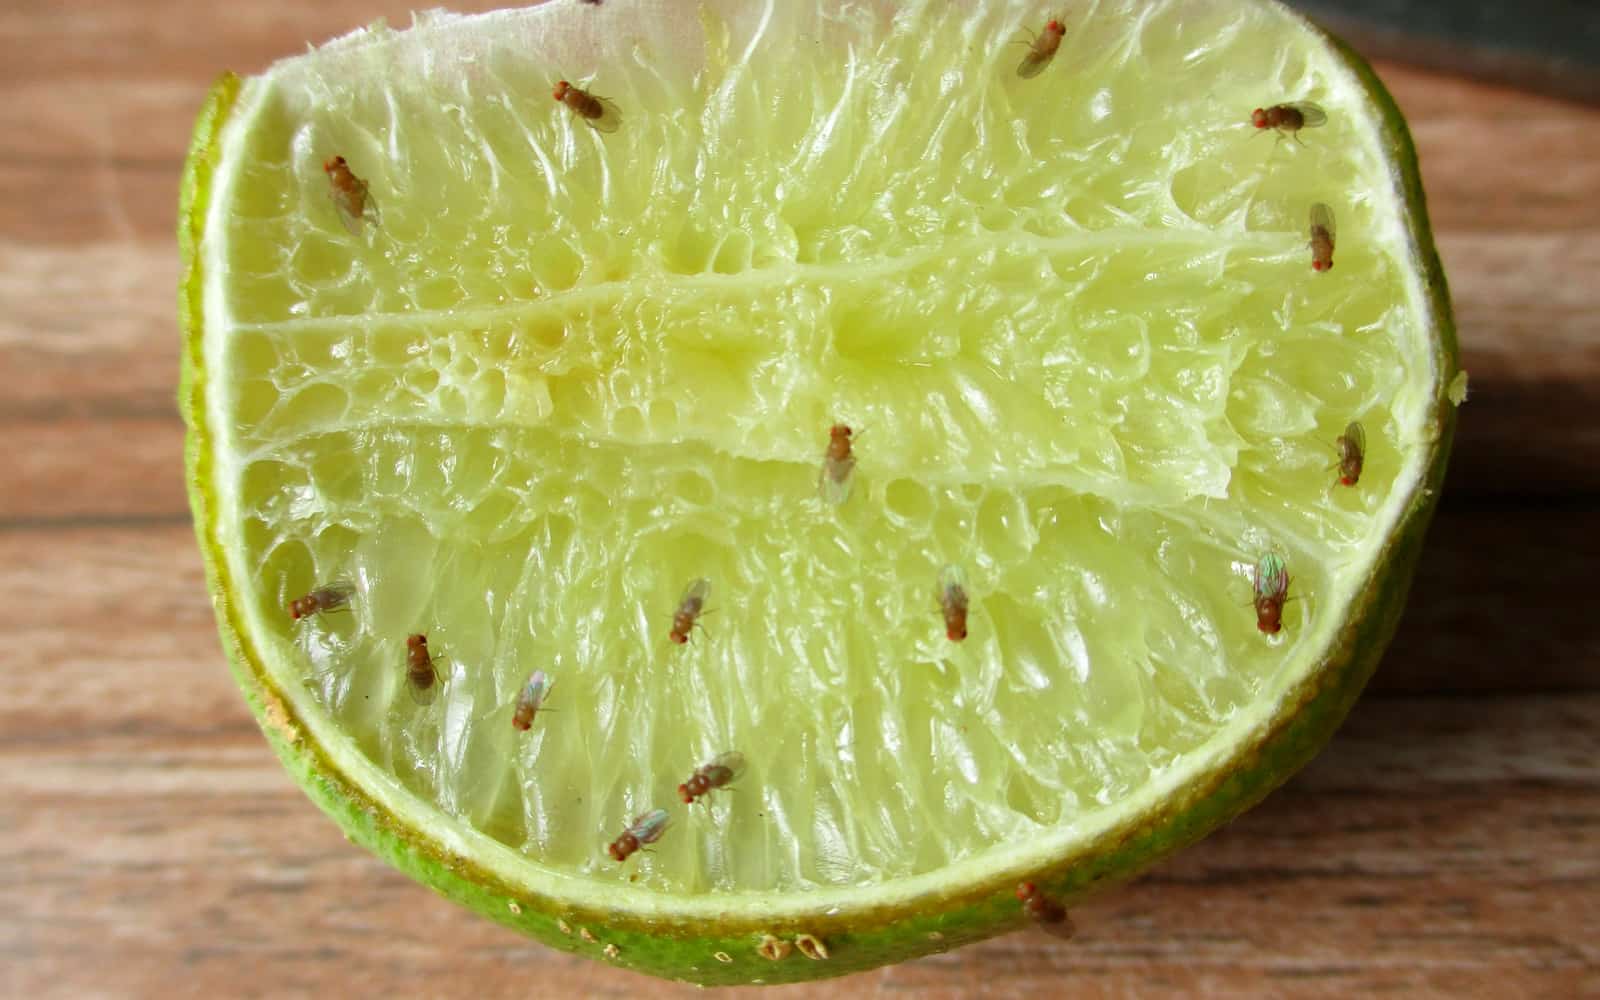 Comment tuer les mouches à fruit, selon un scientifique